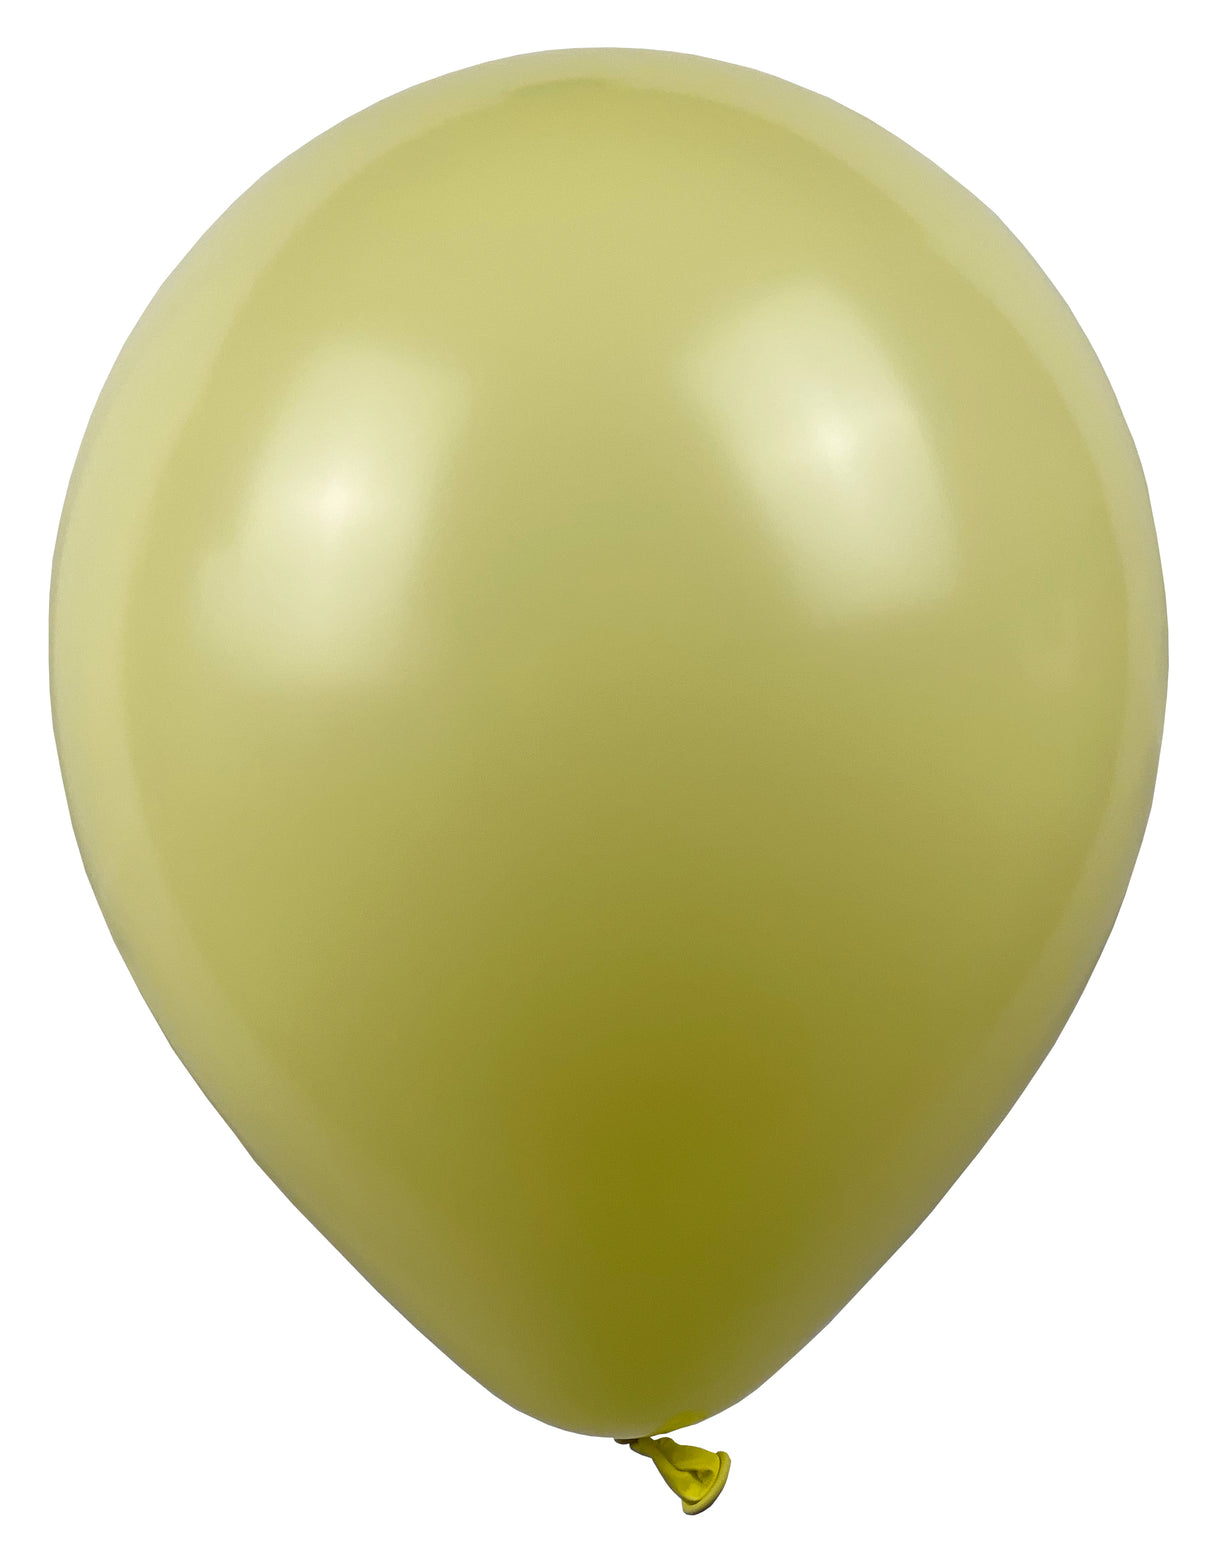 Ilmapallo 28 cm vaalea keltainen 50 kpl/pss